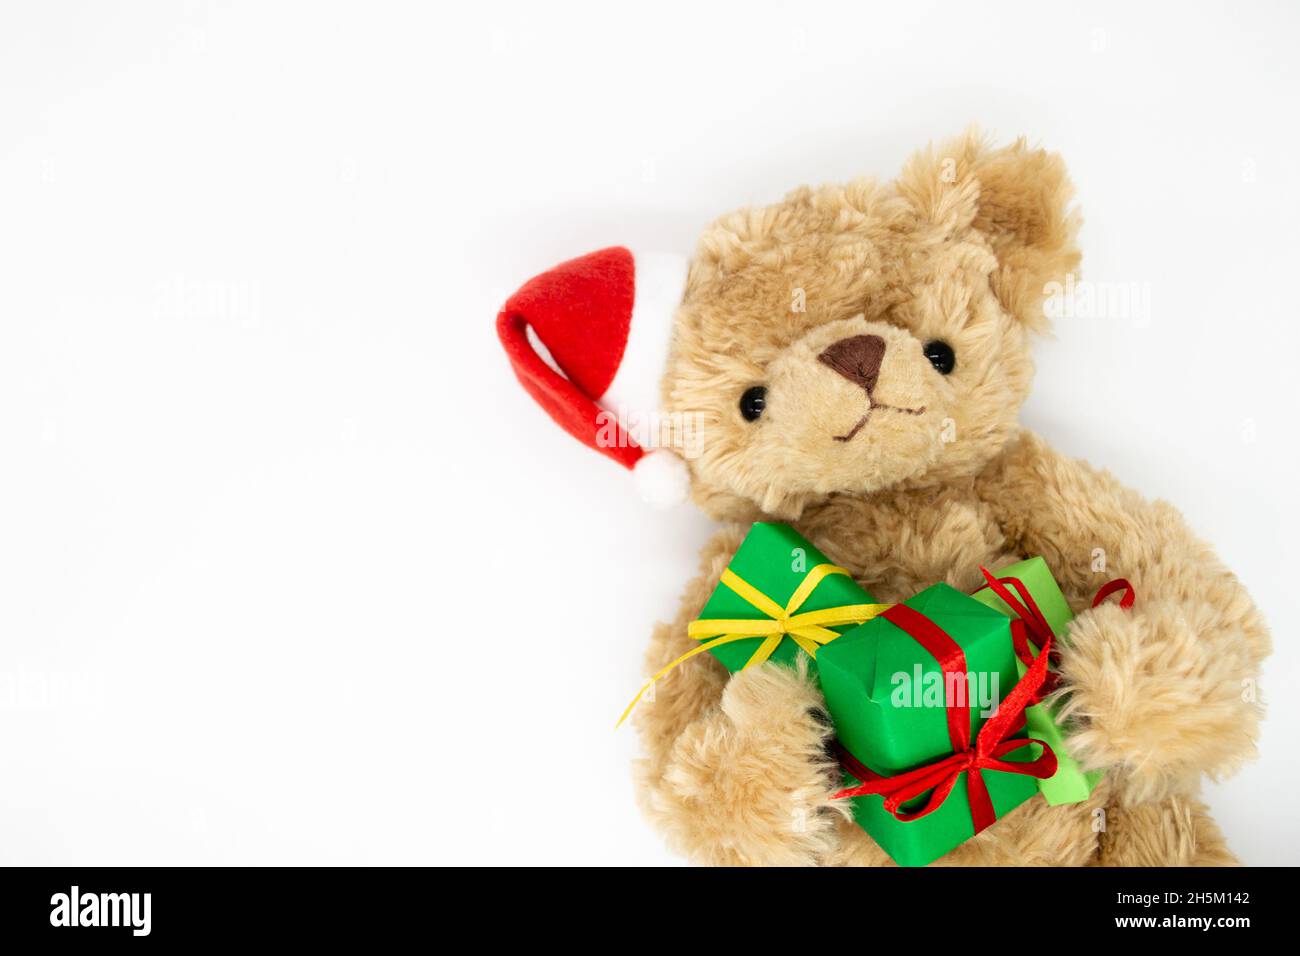 Un ours en peluche Teddy dans un chapeau de Père Noël rouge avec pompon sur une oreille, tenant des boîtes-cadeaux vertes dans ses pattes.Arrière-plan blanc, espace de copie.Le co Banque D'Images